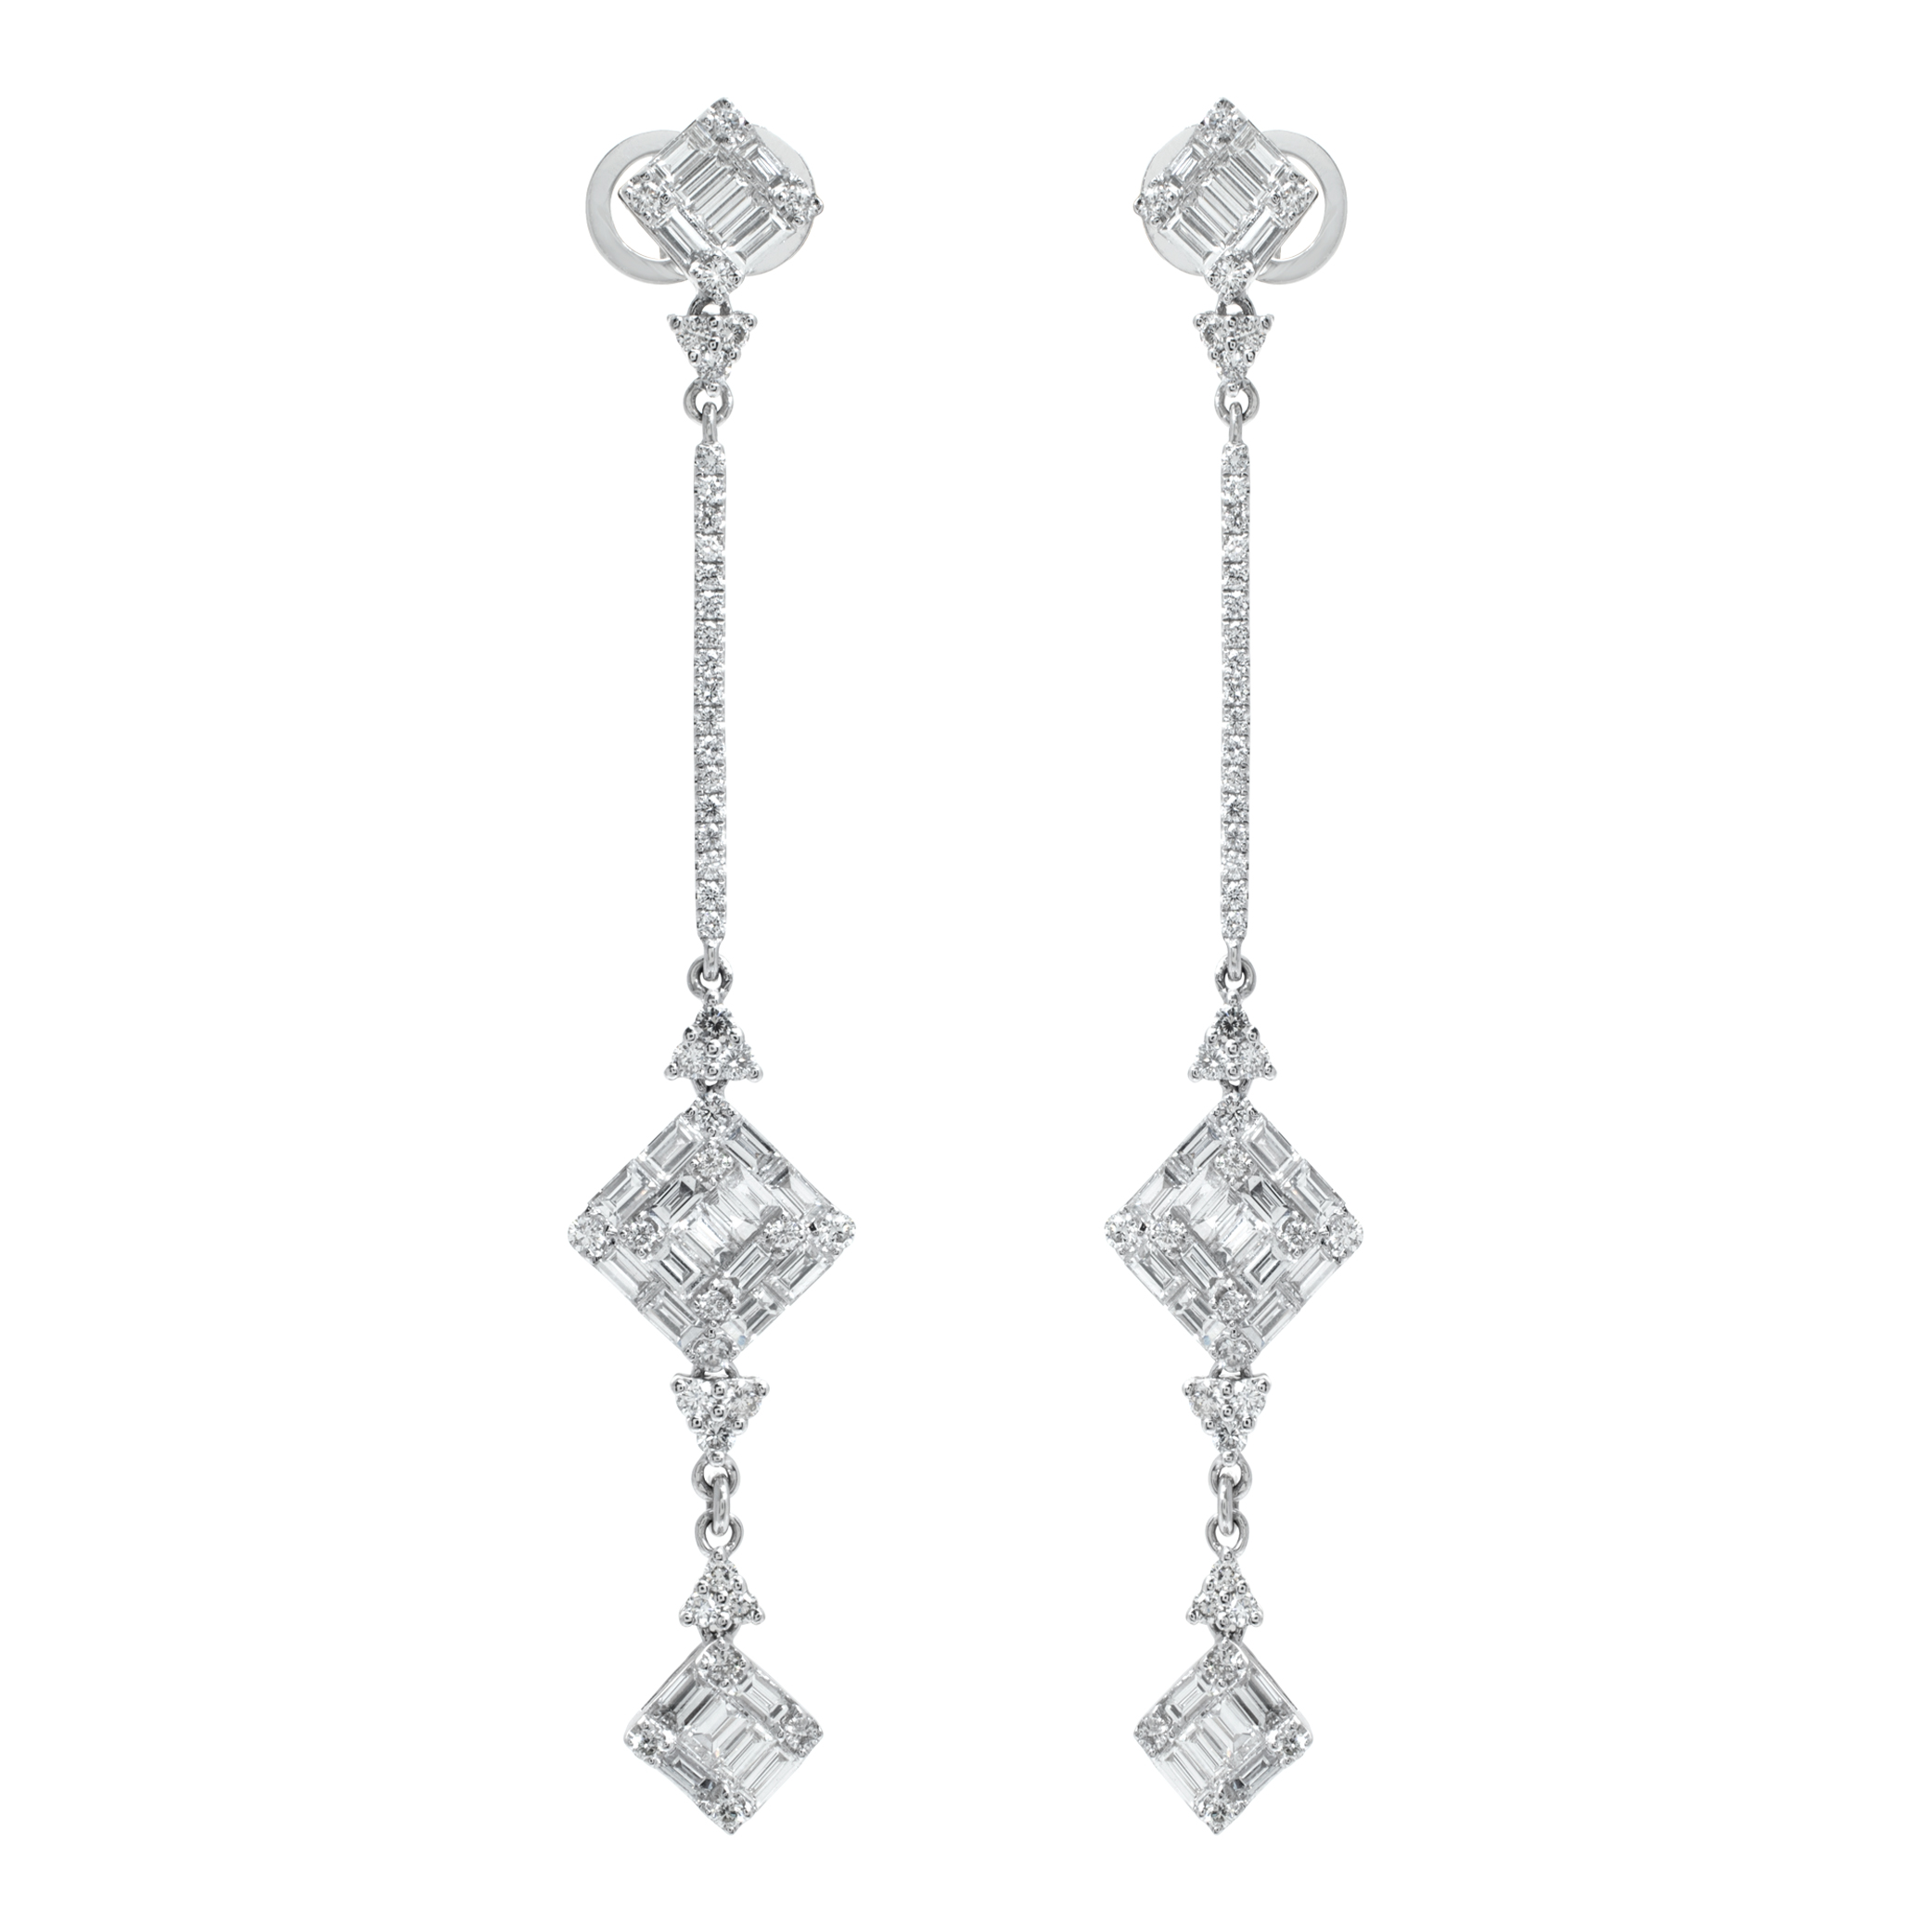 Hanging diamond earrings in 18k white gold (Stones)